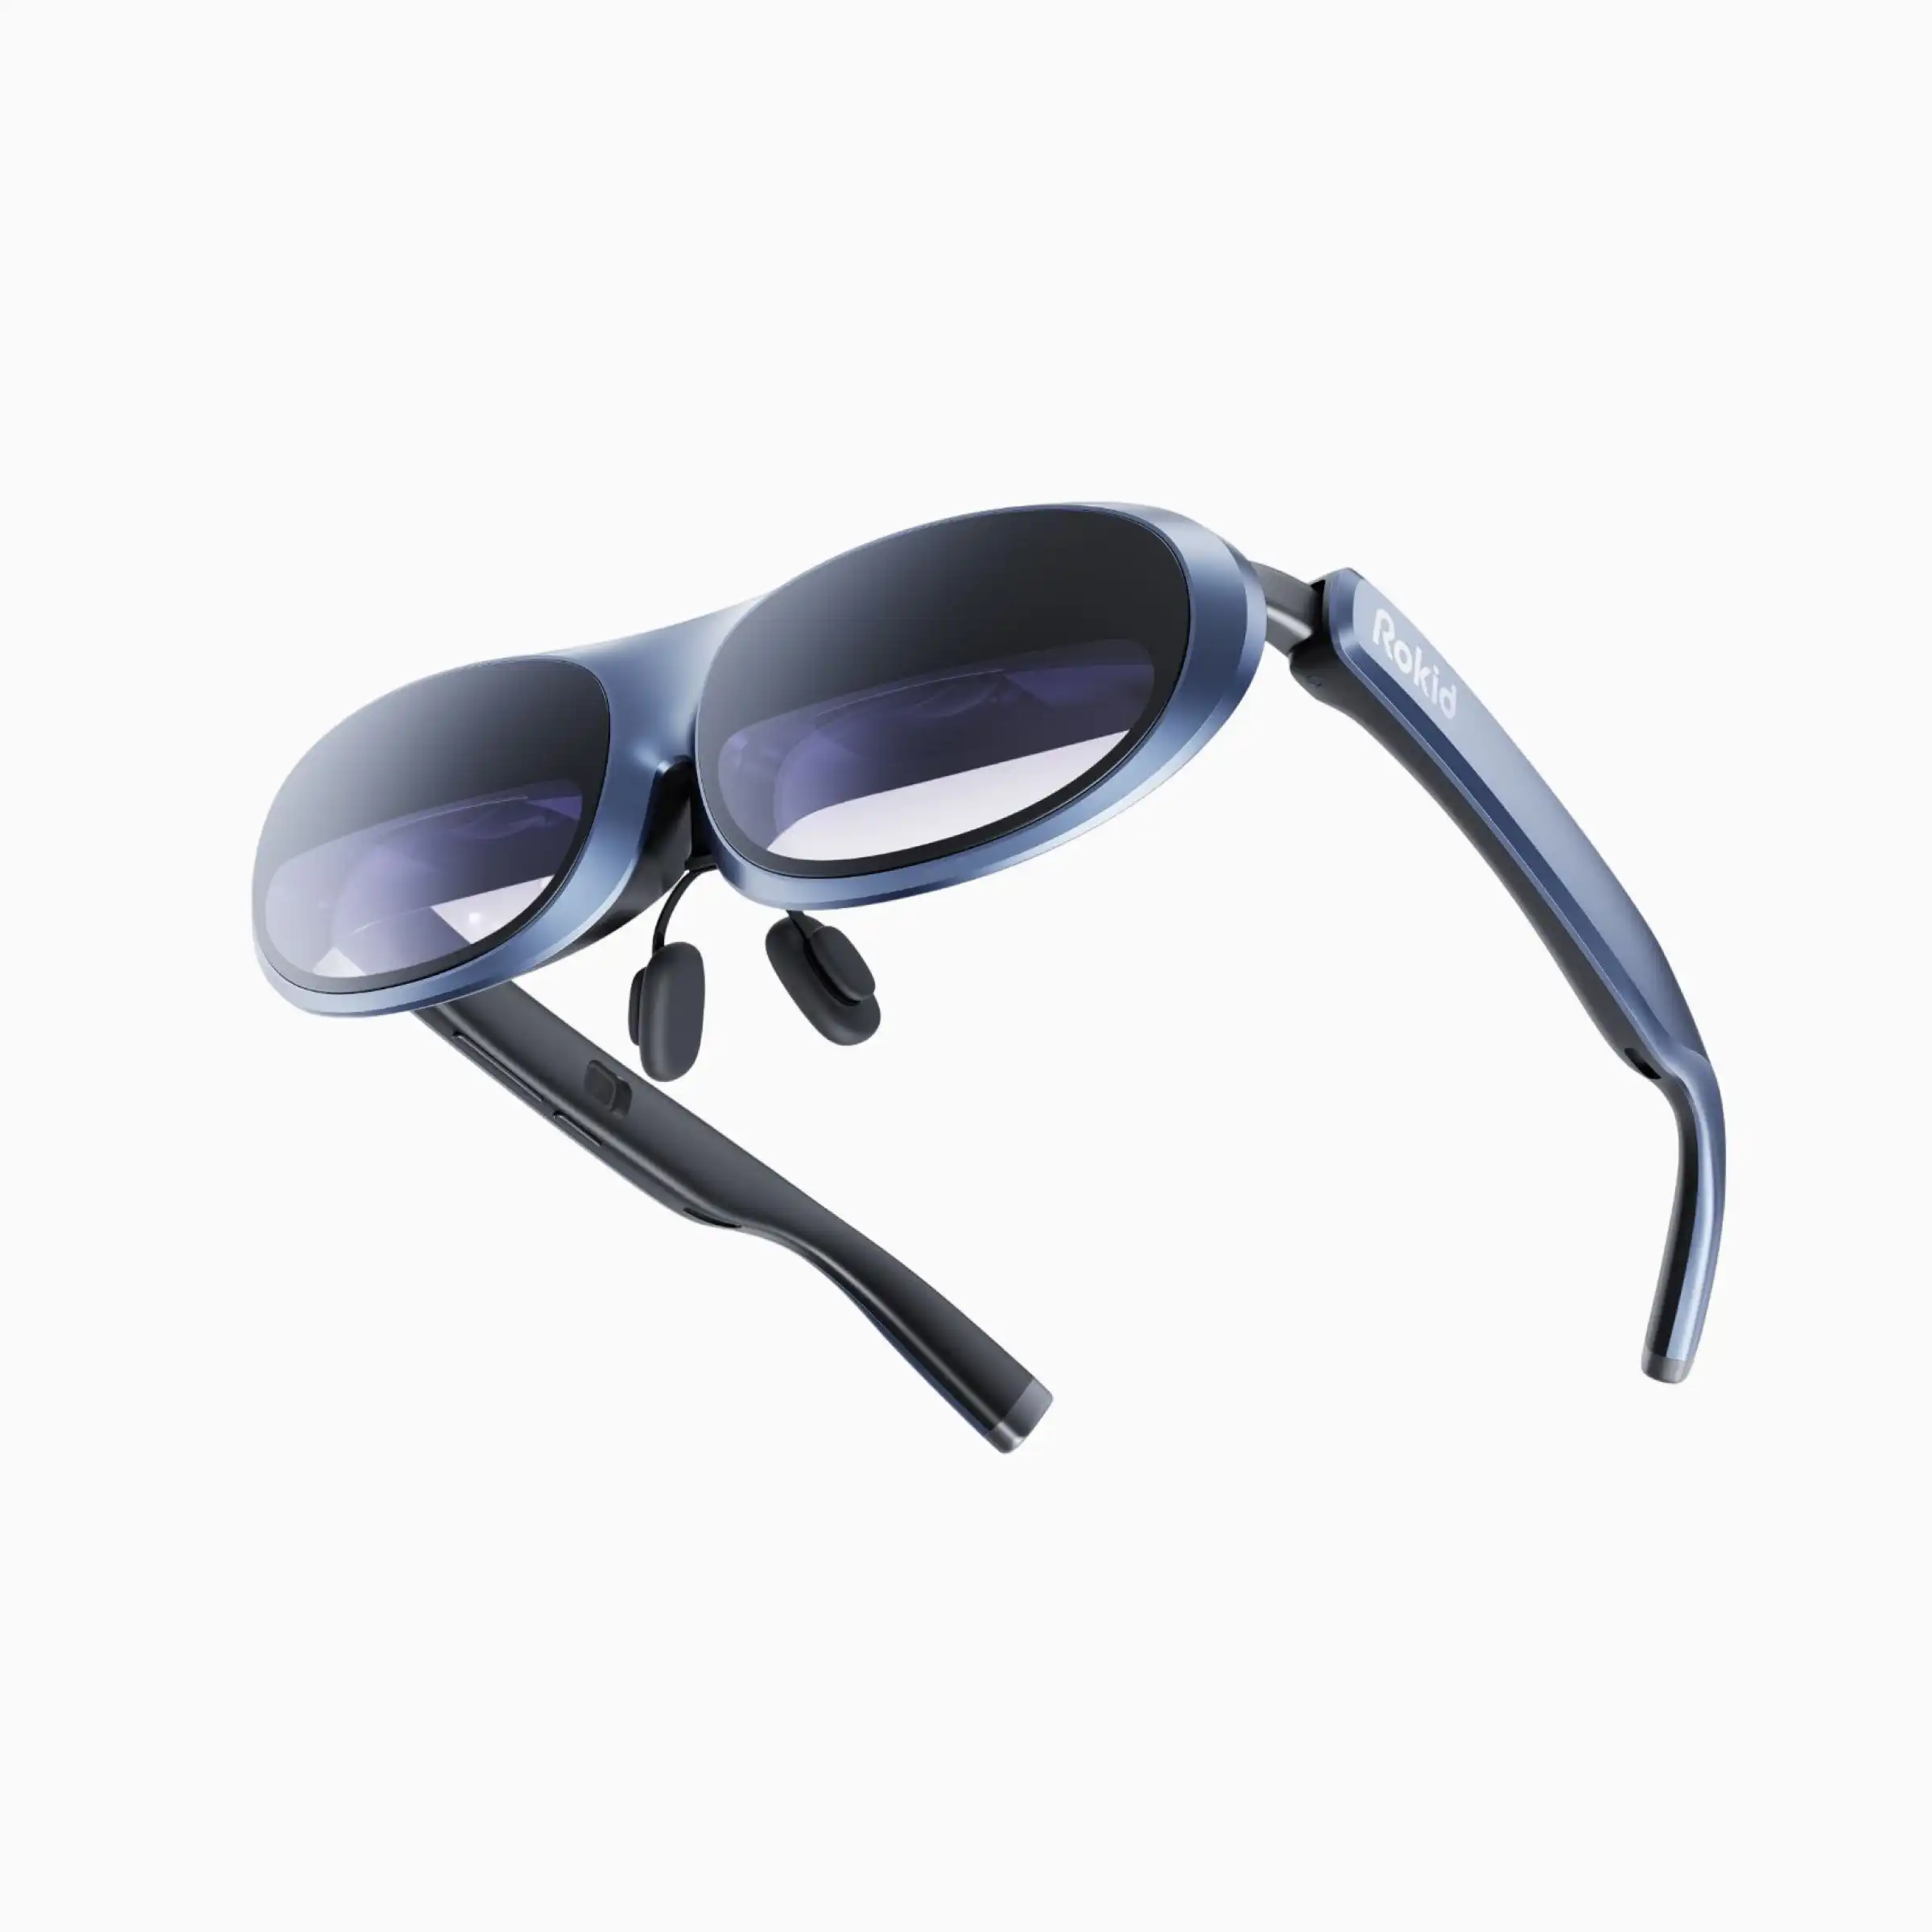 ขายร้อน Wupro x Rokid Max Ar แว่นตา 3D รองรับ 120Hz อัตราการรีเฟรช 250 นิ้วขนาดรูปภาพ 4K สมาร์ท Meta AR/VR แว่นตา